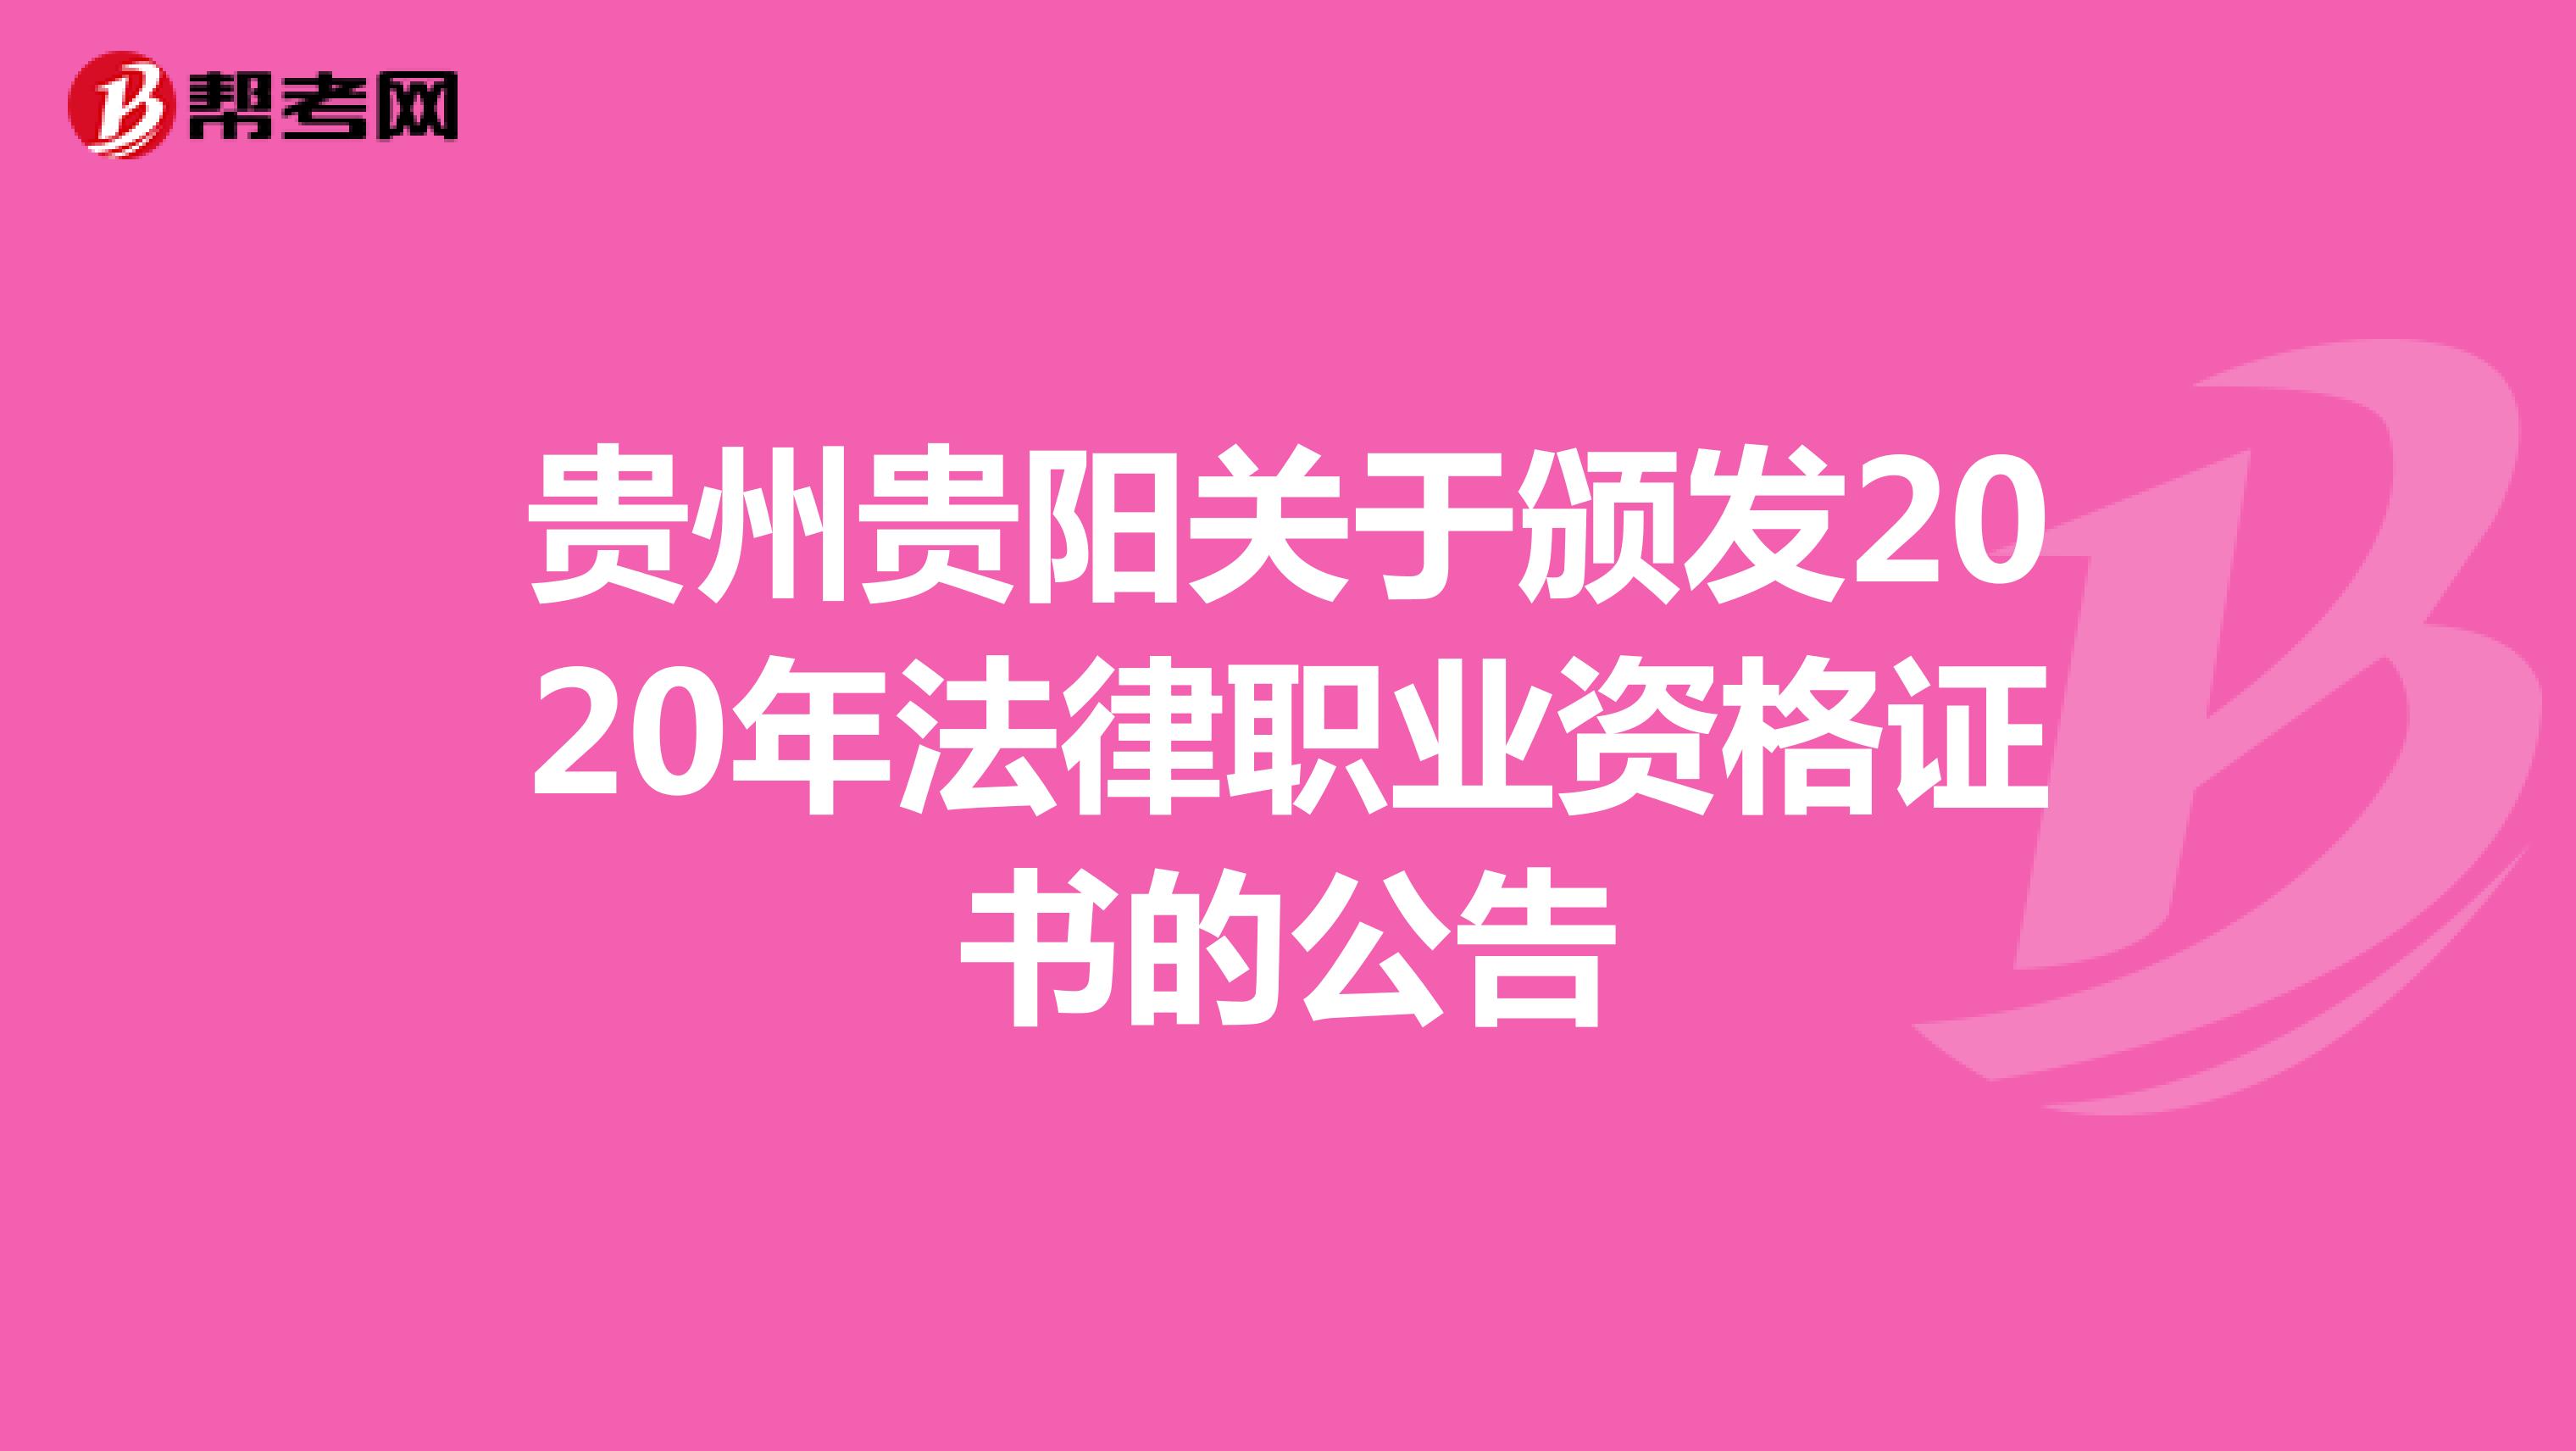 贵州贵阳关于颁发2020年法律职业资格证书的公告